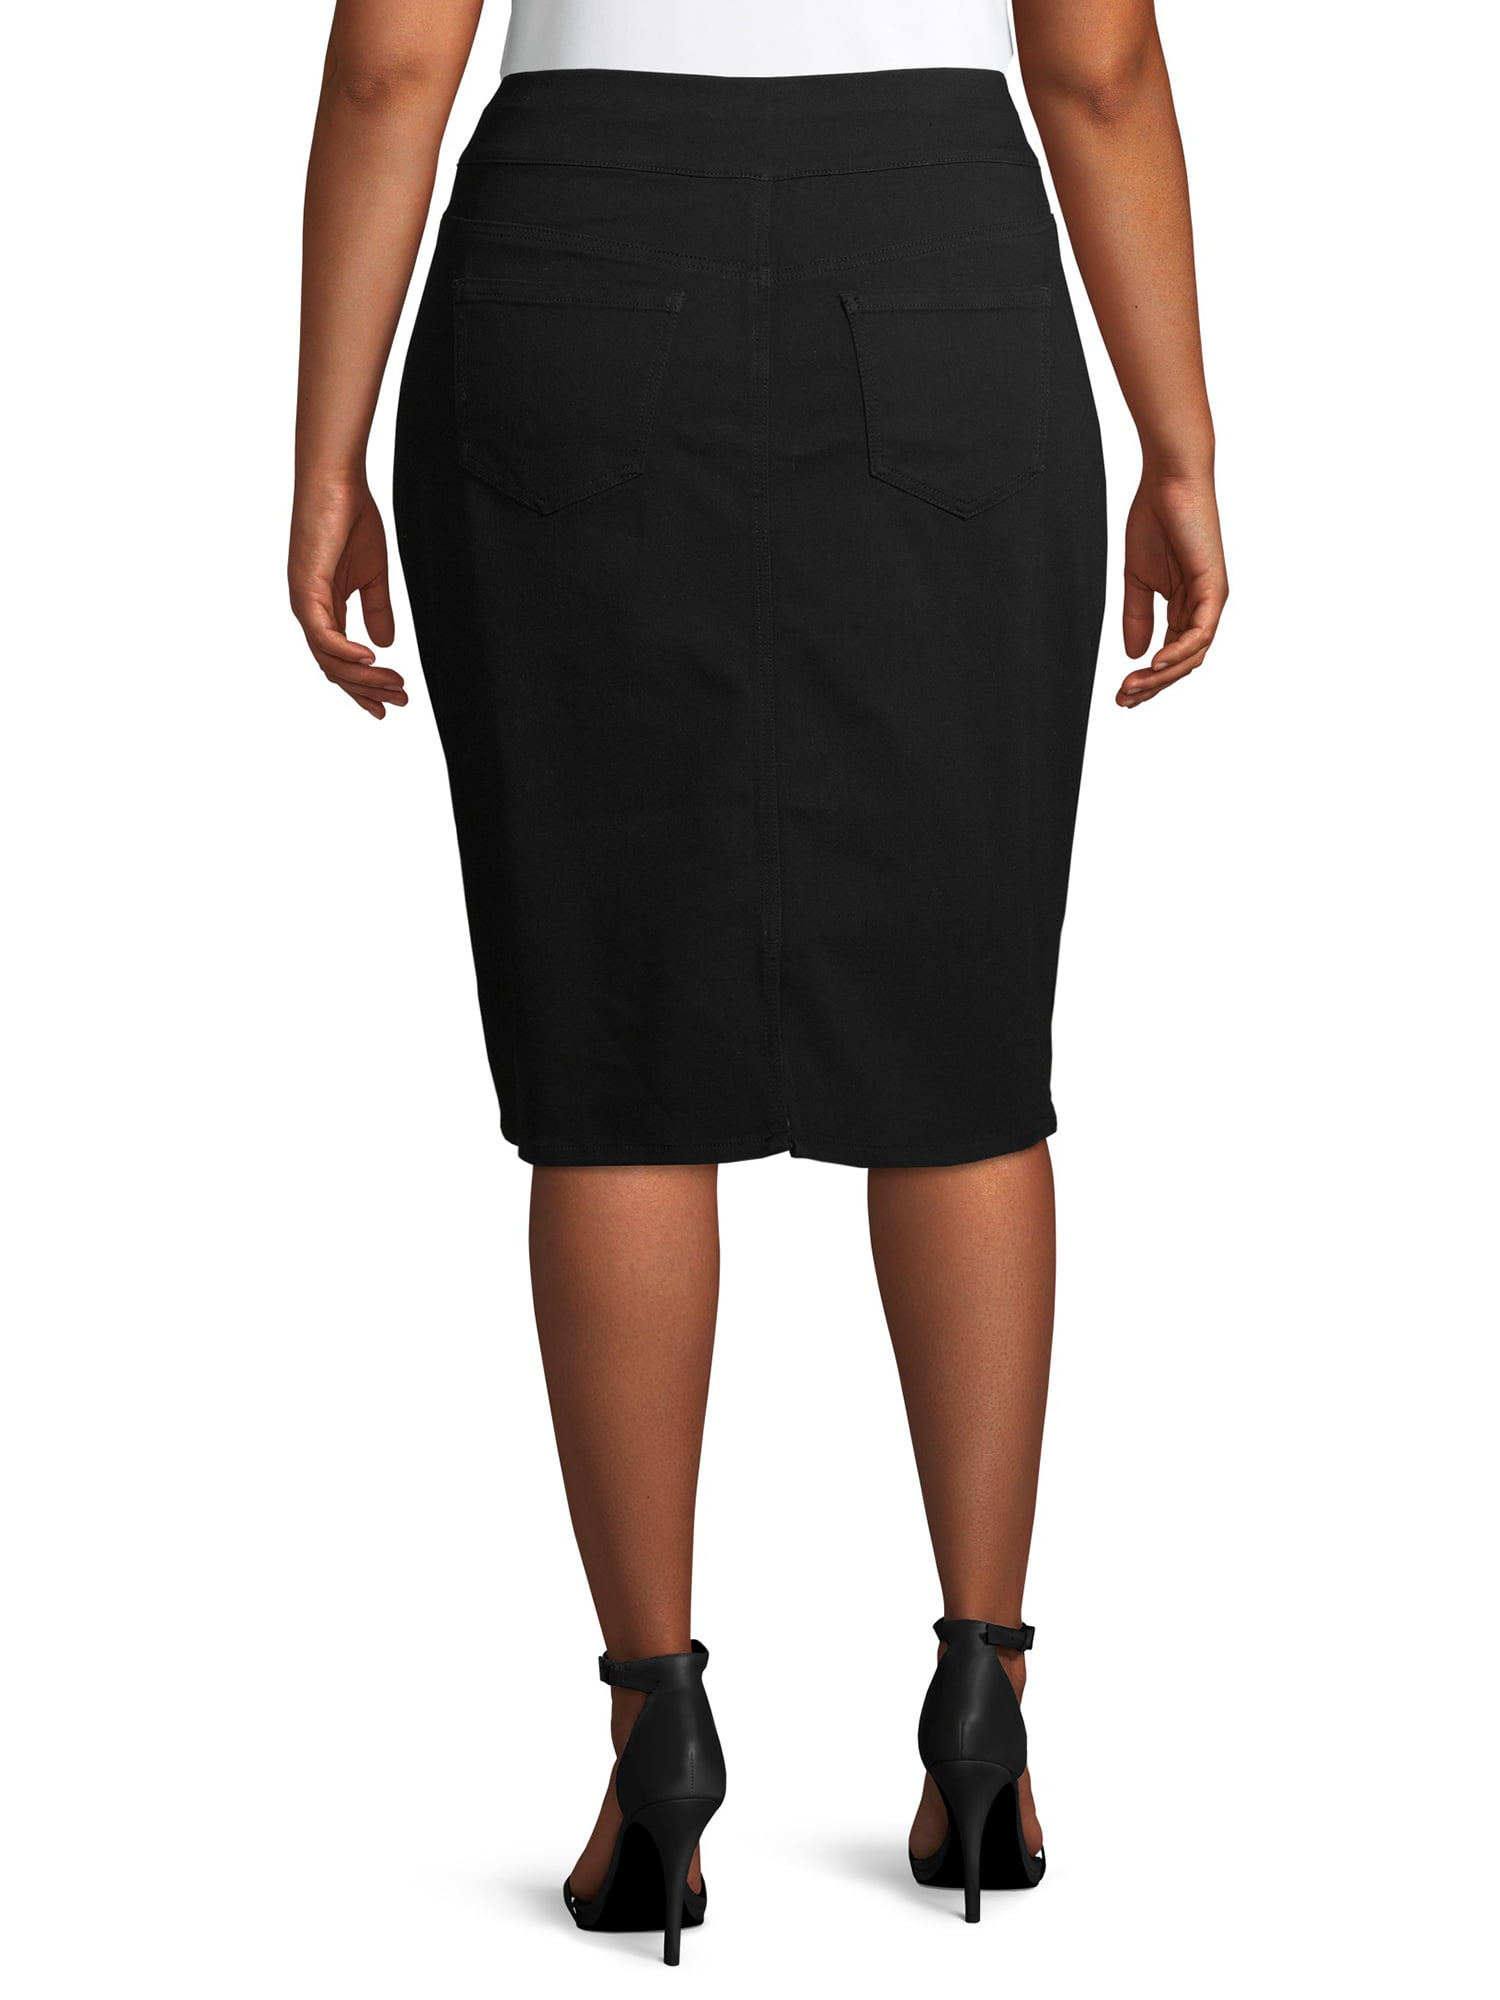 Alivia Ford Women's Plus Size Pull-On Denim Skirt